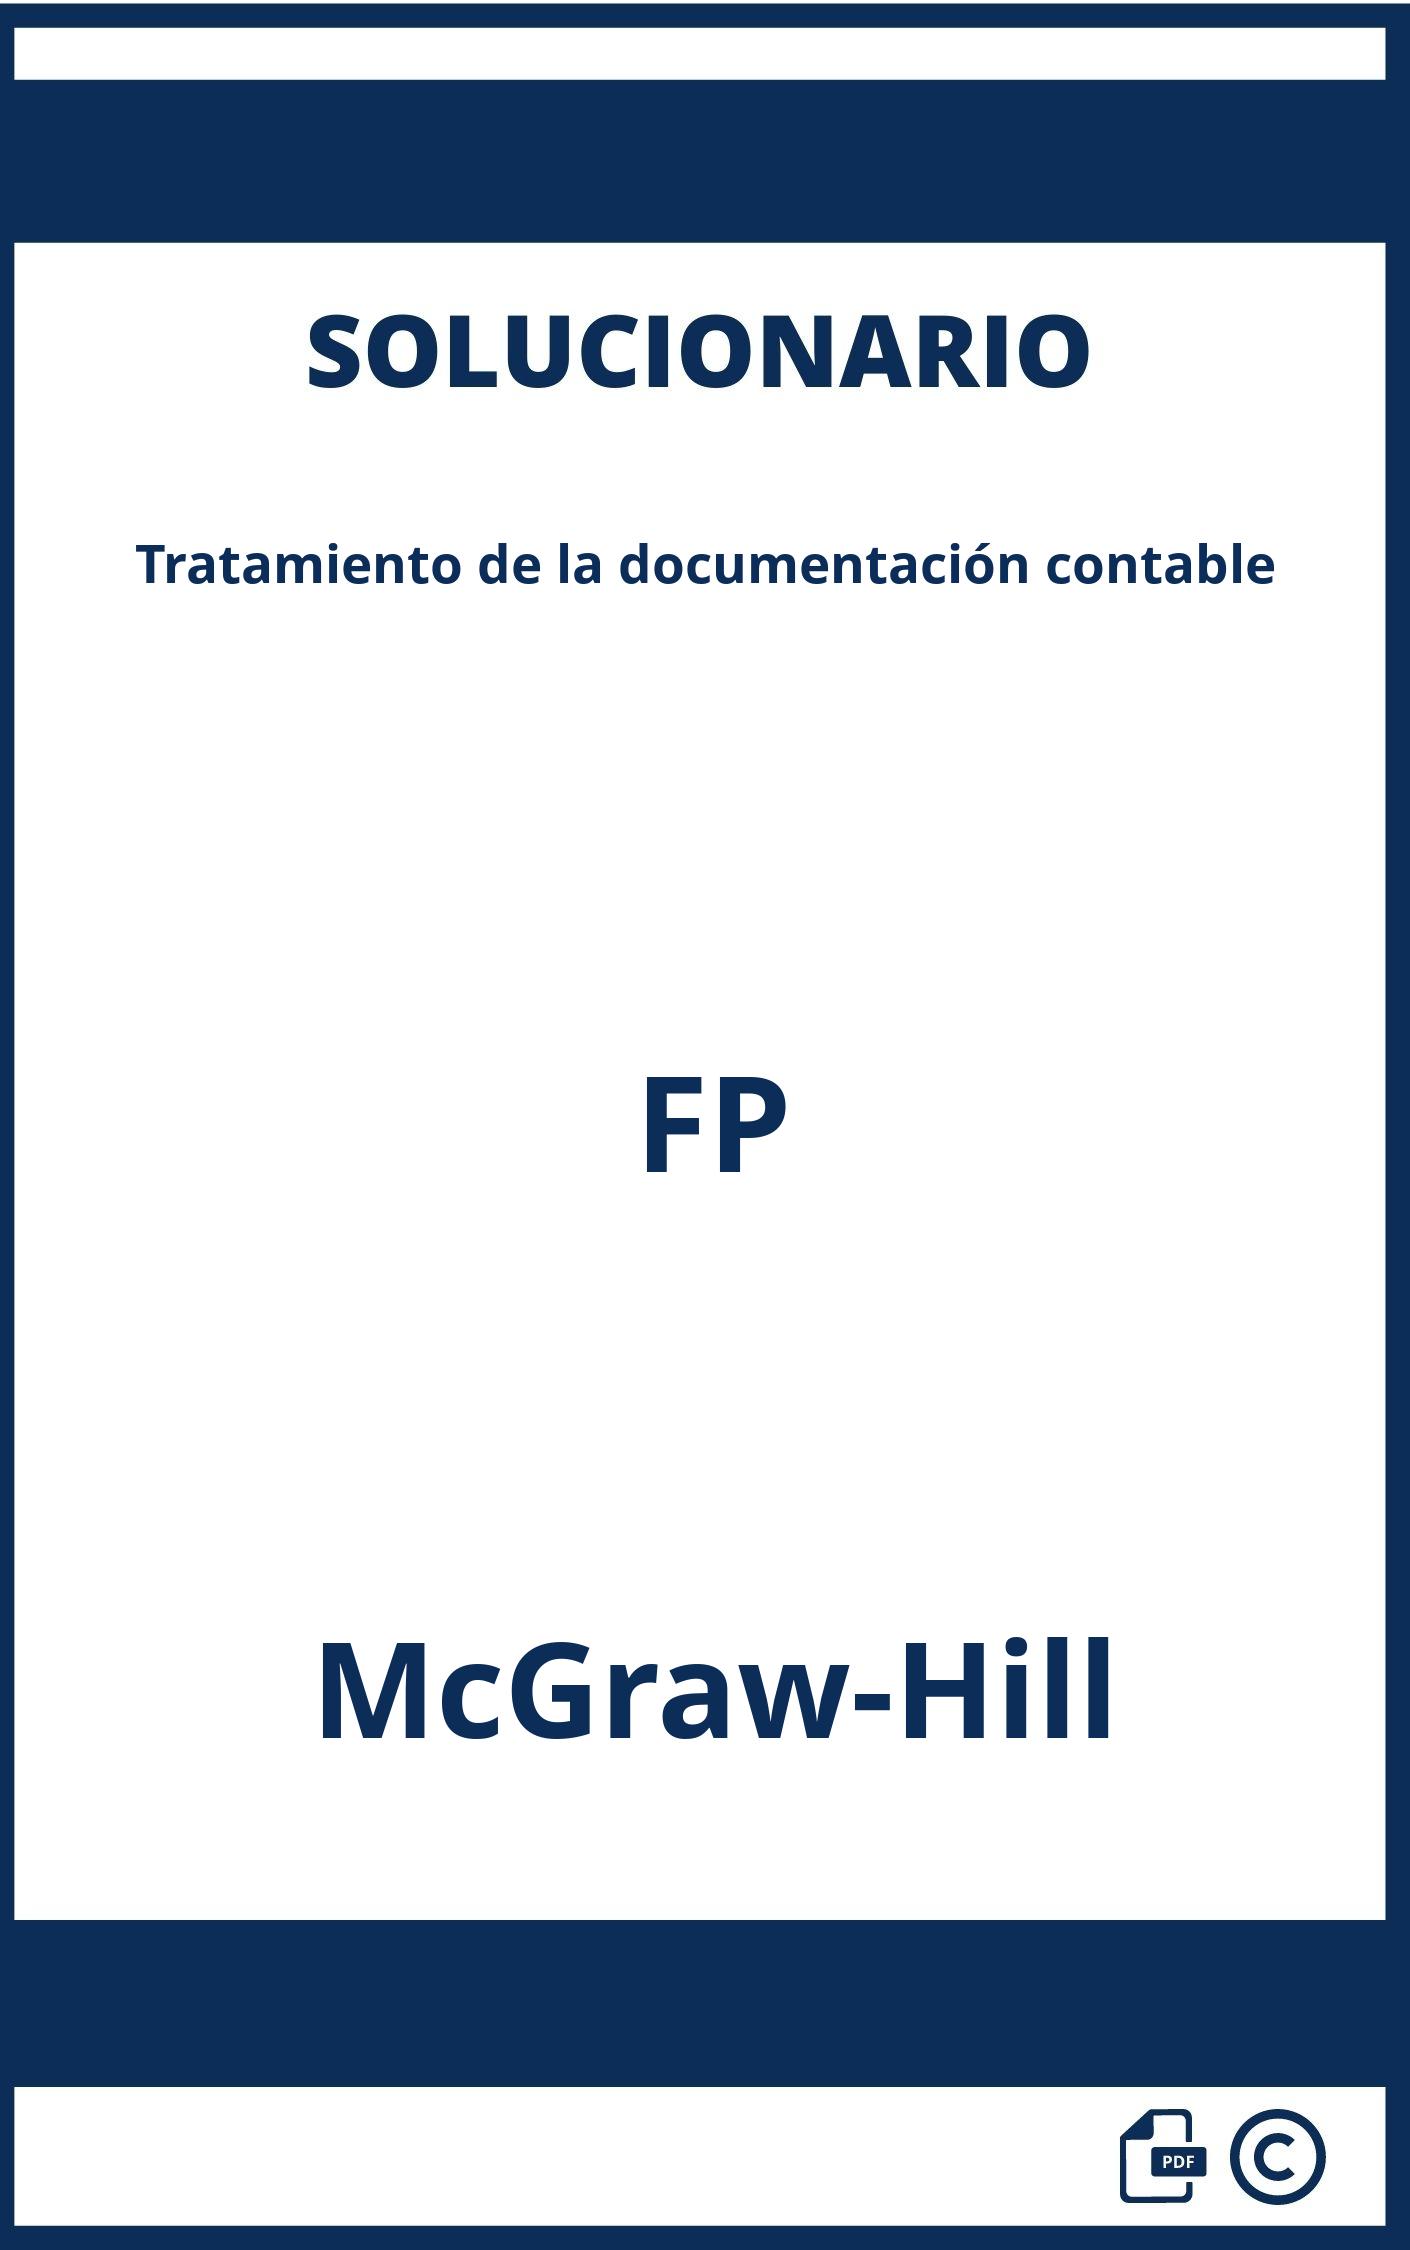 Solucionario Tratamiento de la documentación contable FP McGraw-Hill